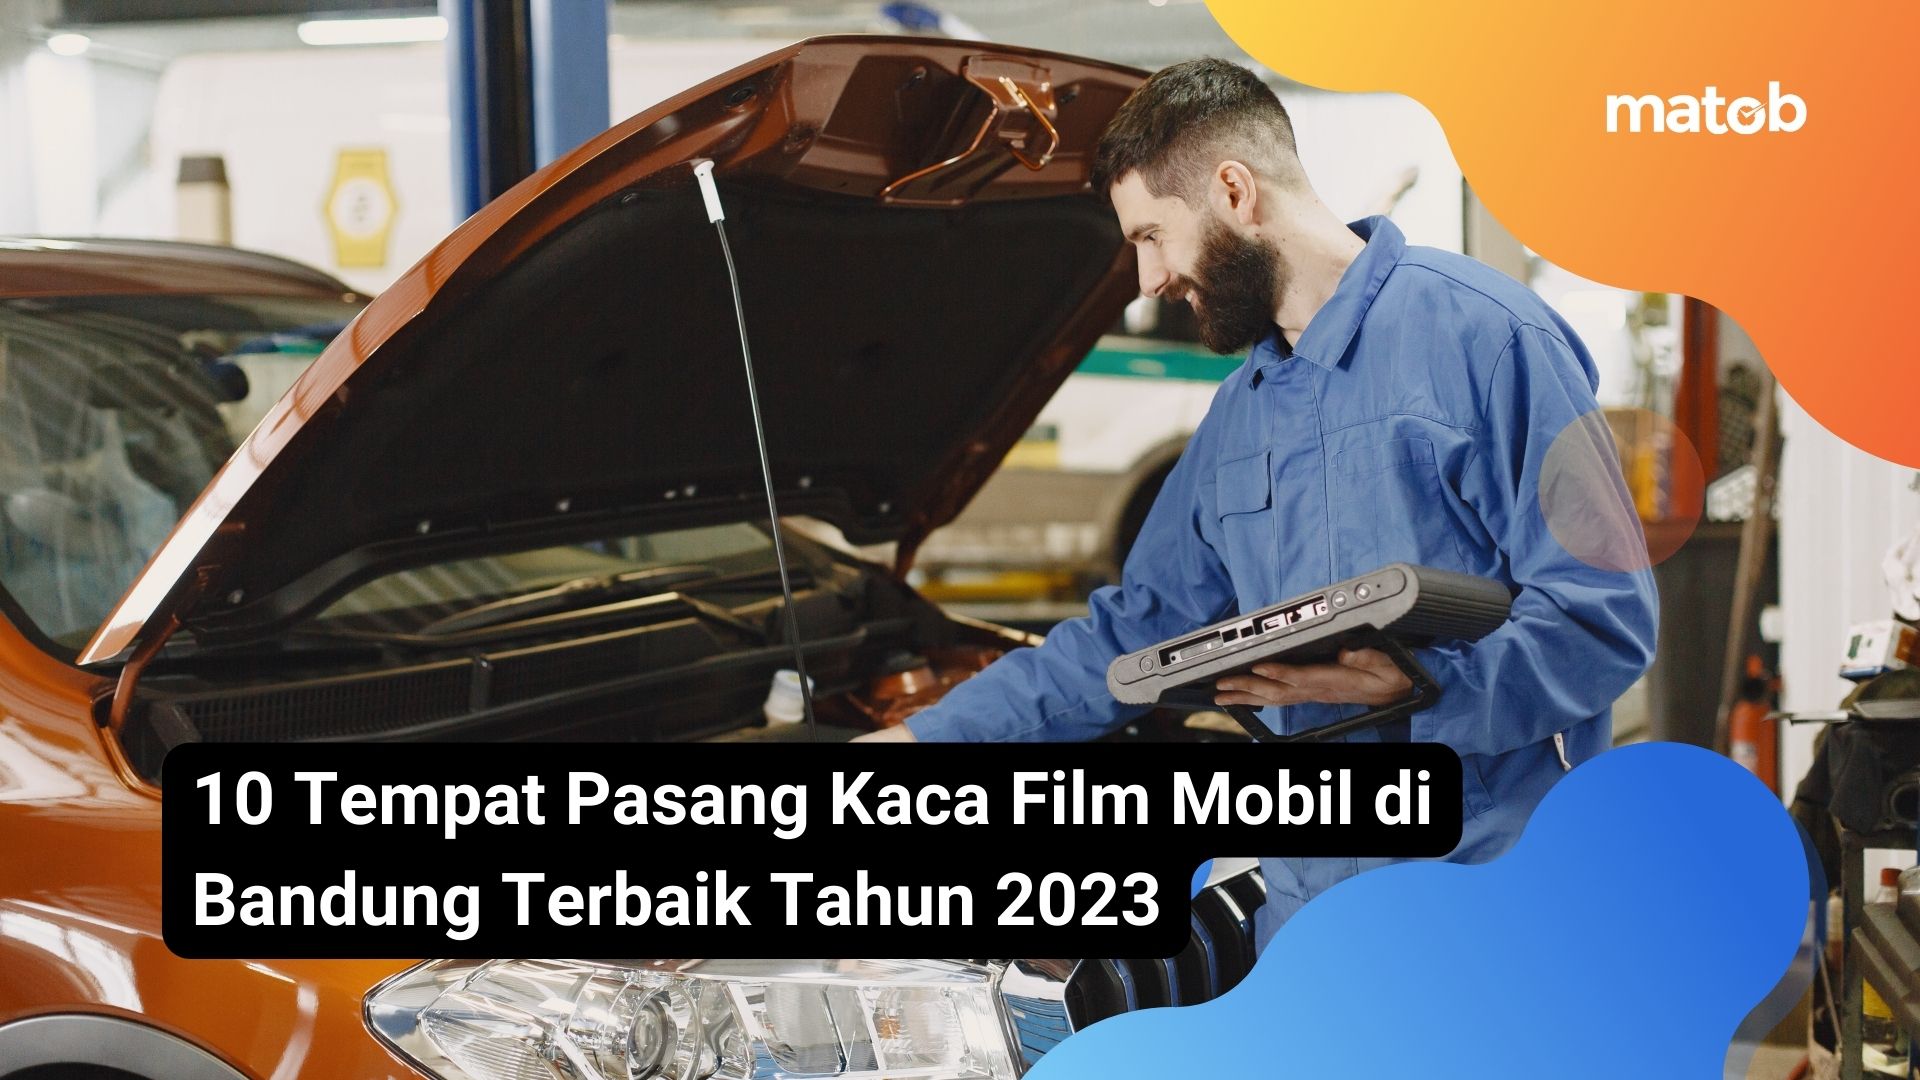 10 Tempat Pasang Kaca Film Mobil di Bandung Terbaik Tahun 2023